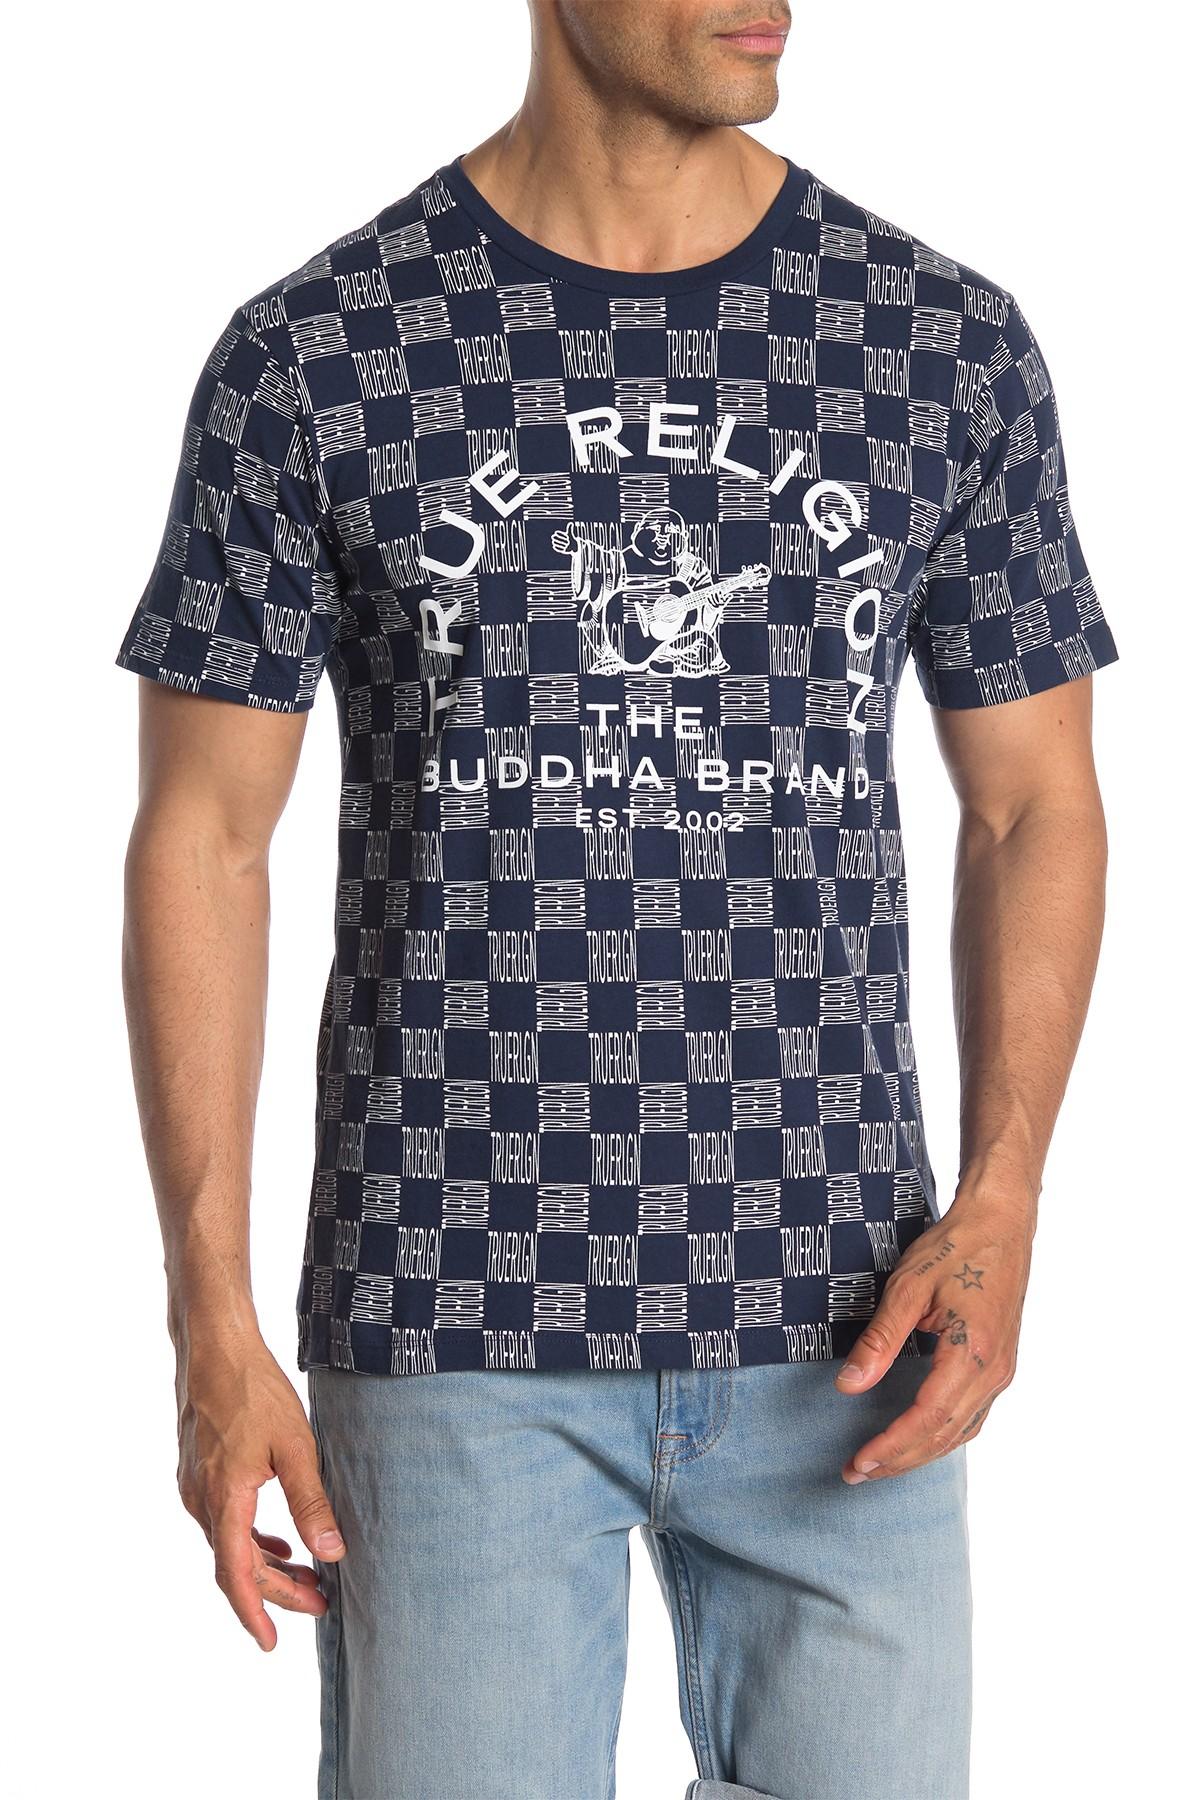 True Religion Short Sleeve Brand Logo Print T-shirt in Blue for Men - Lyst